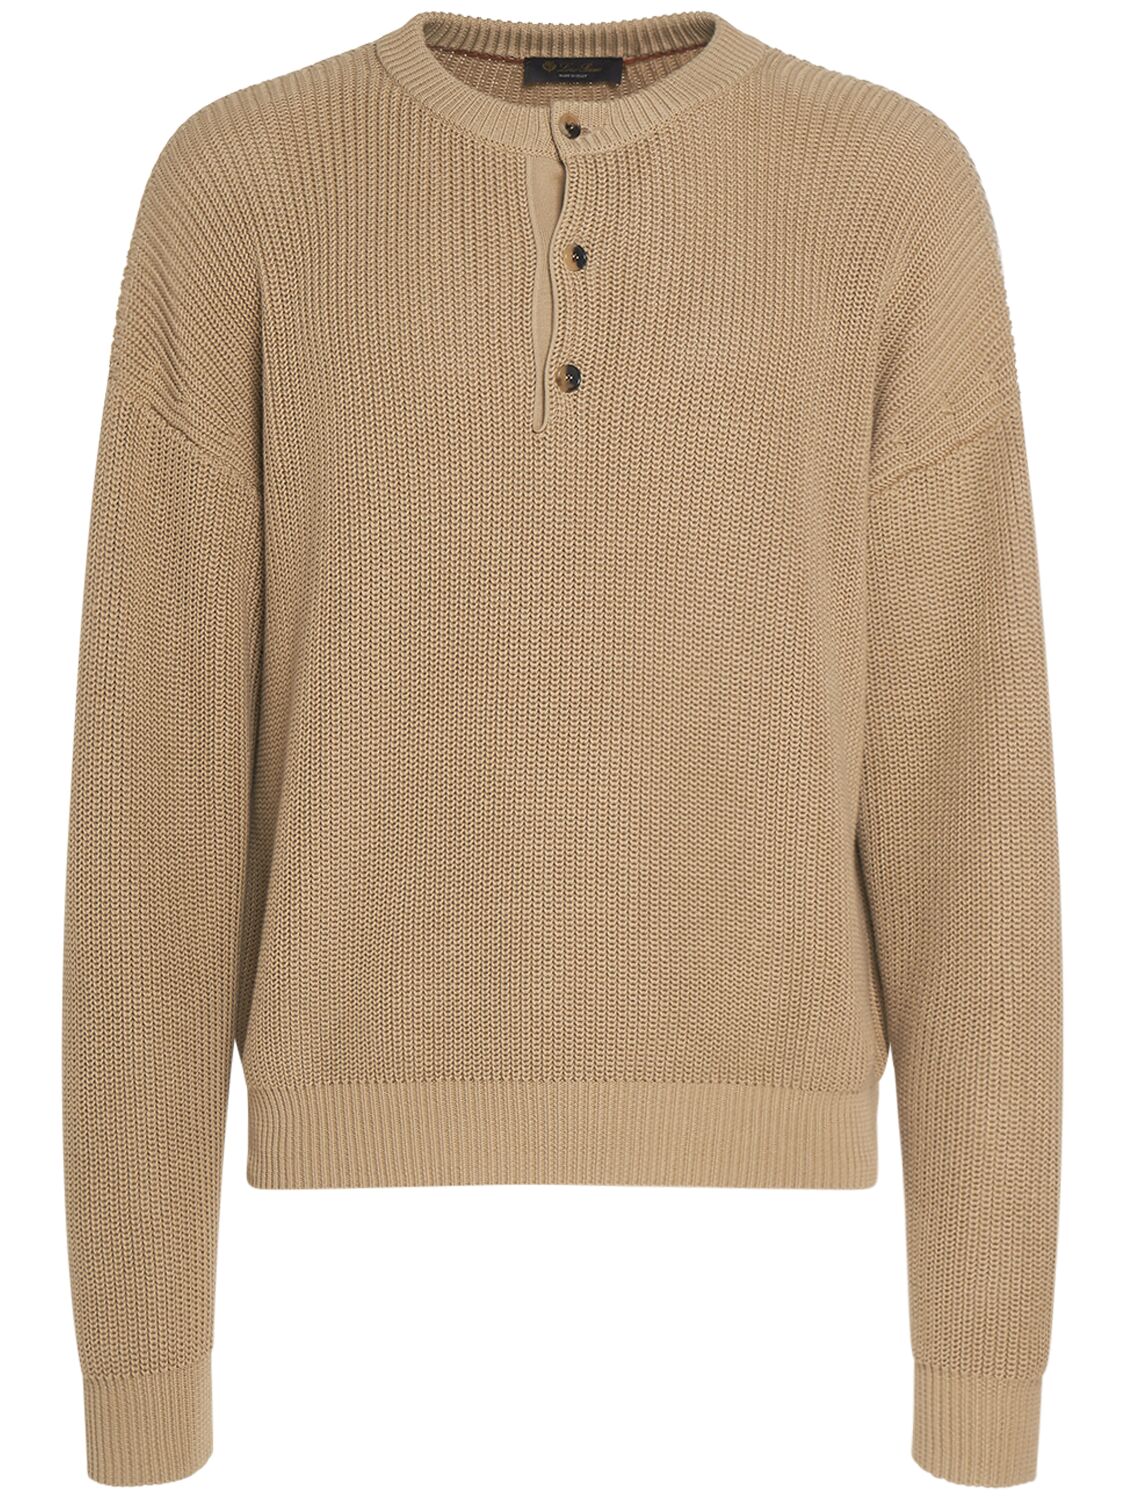 Serafino Cotton Crewneck Sweater